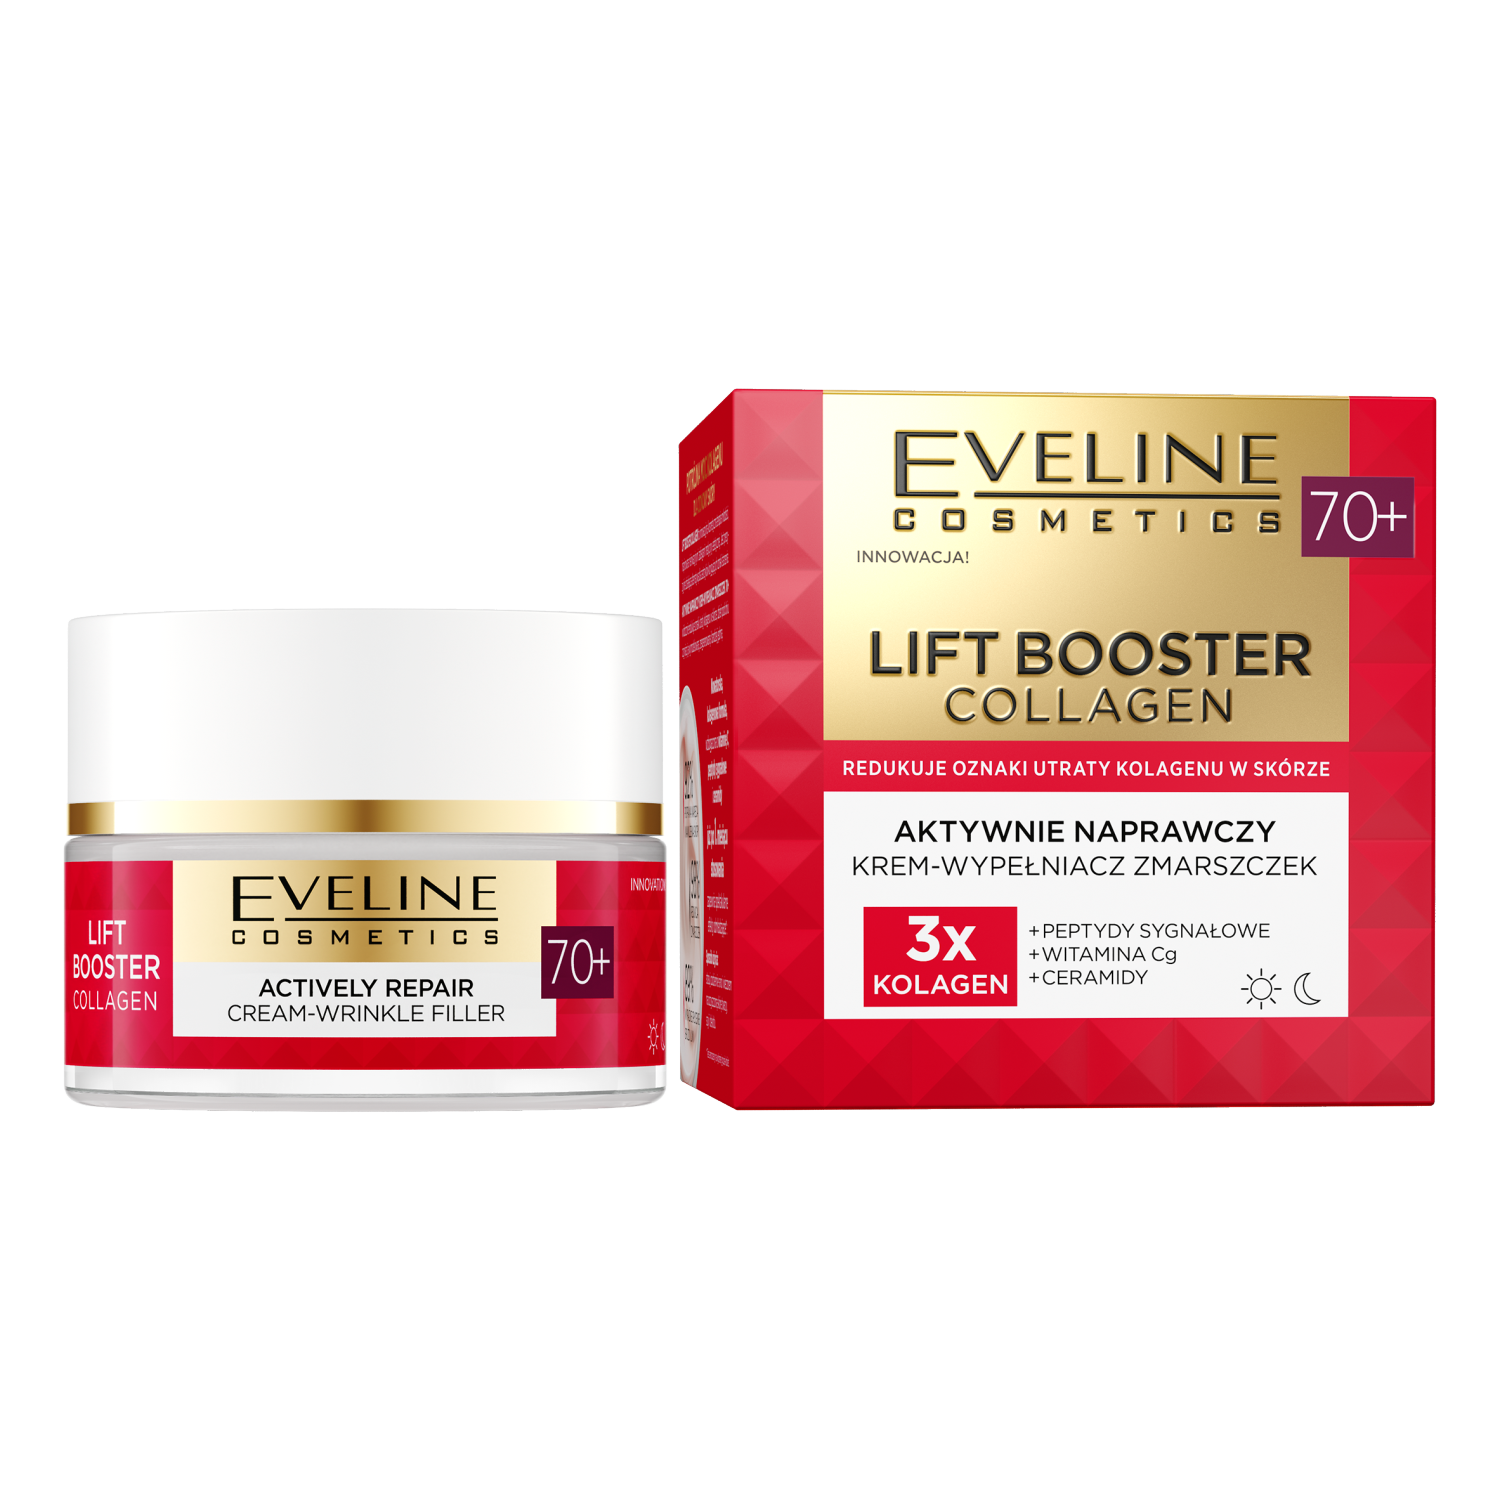 Активно восстанавливающий крем-филлер против морщин для лица 70+ Eveline Cosmetics Lift Booster Collagen, 50 мл